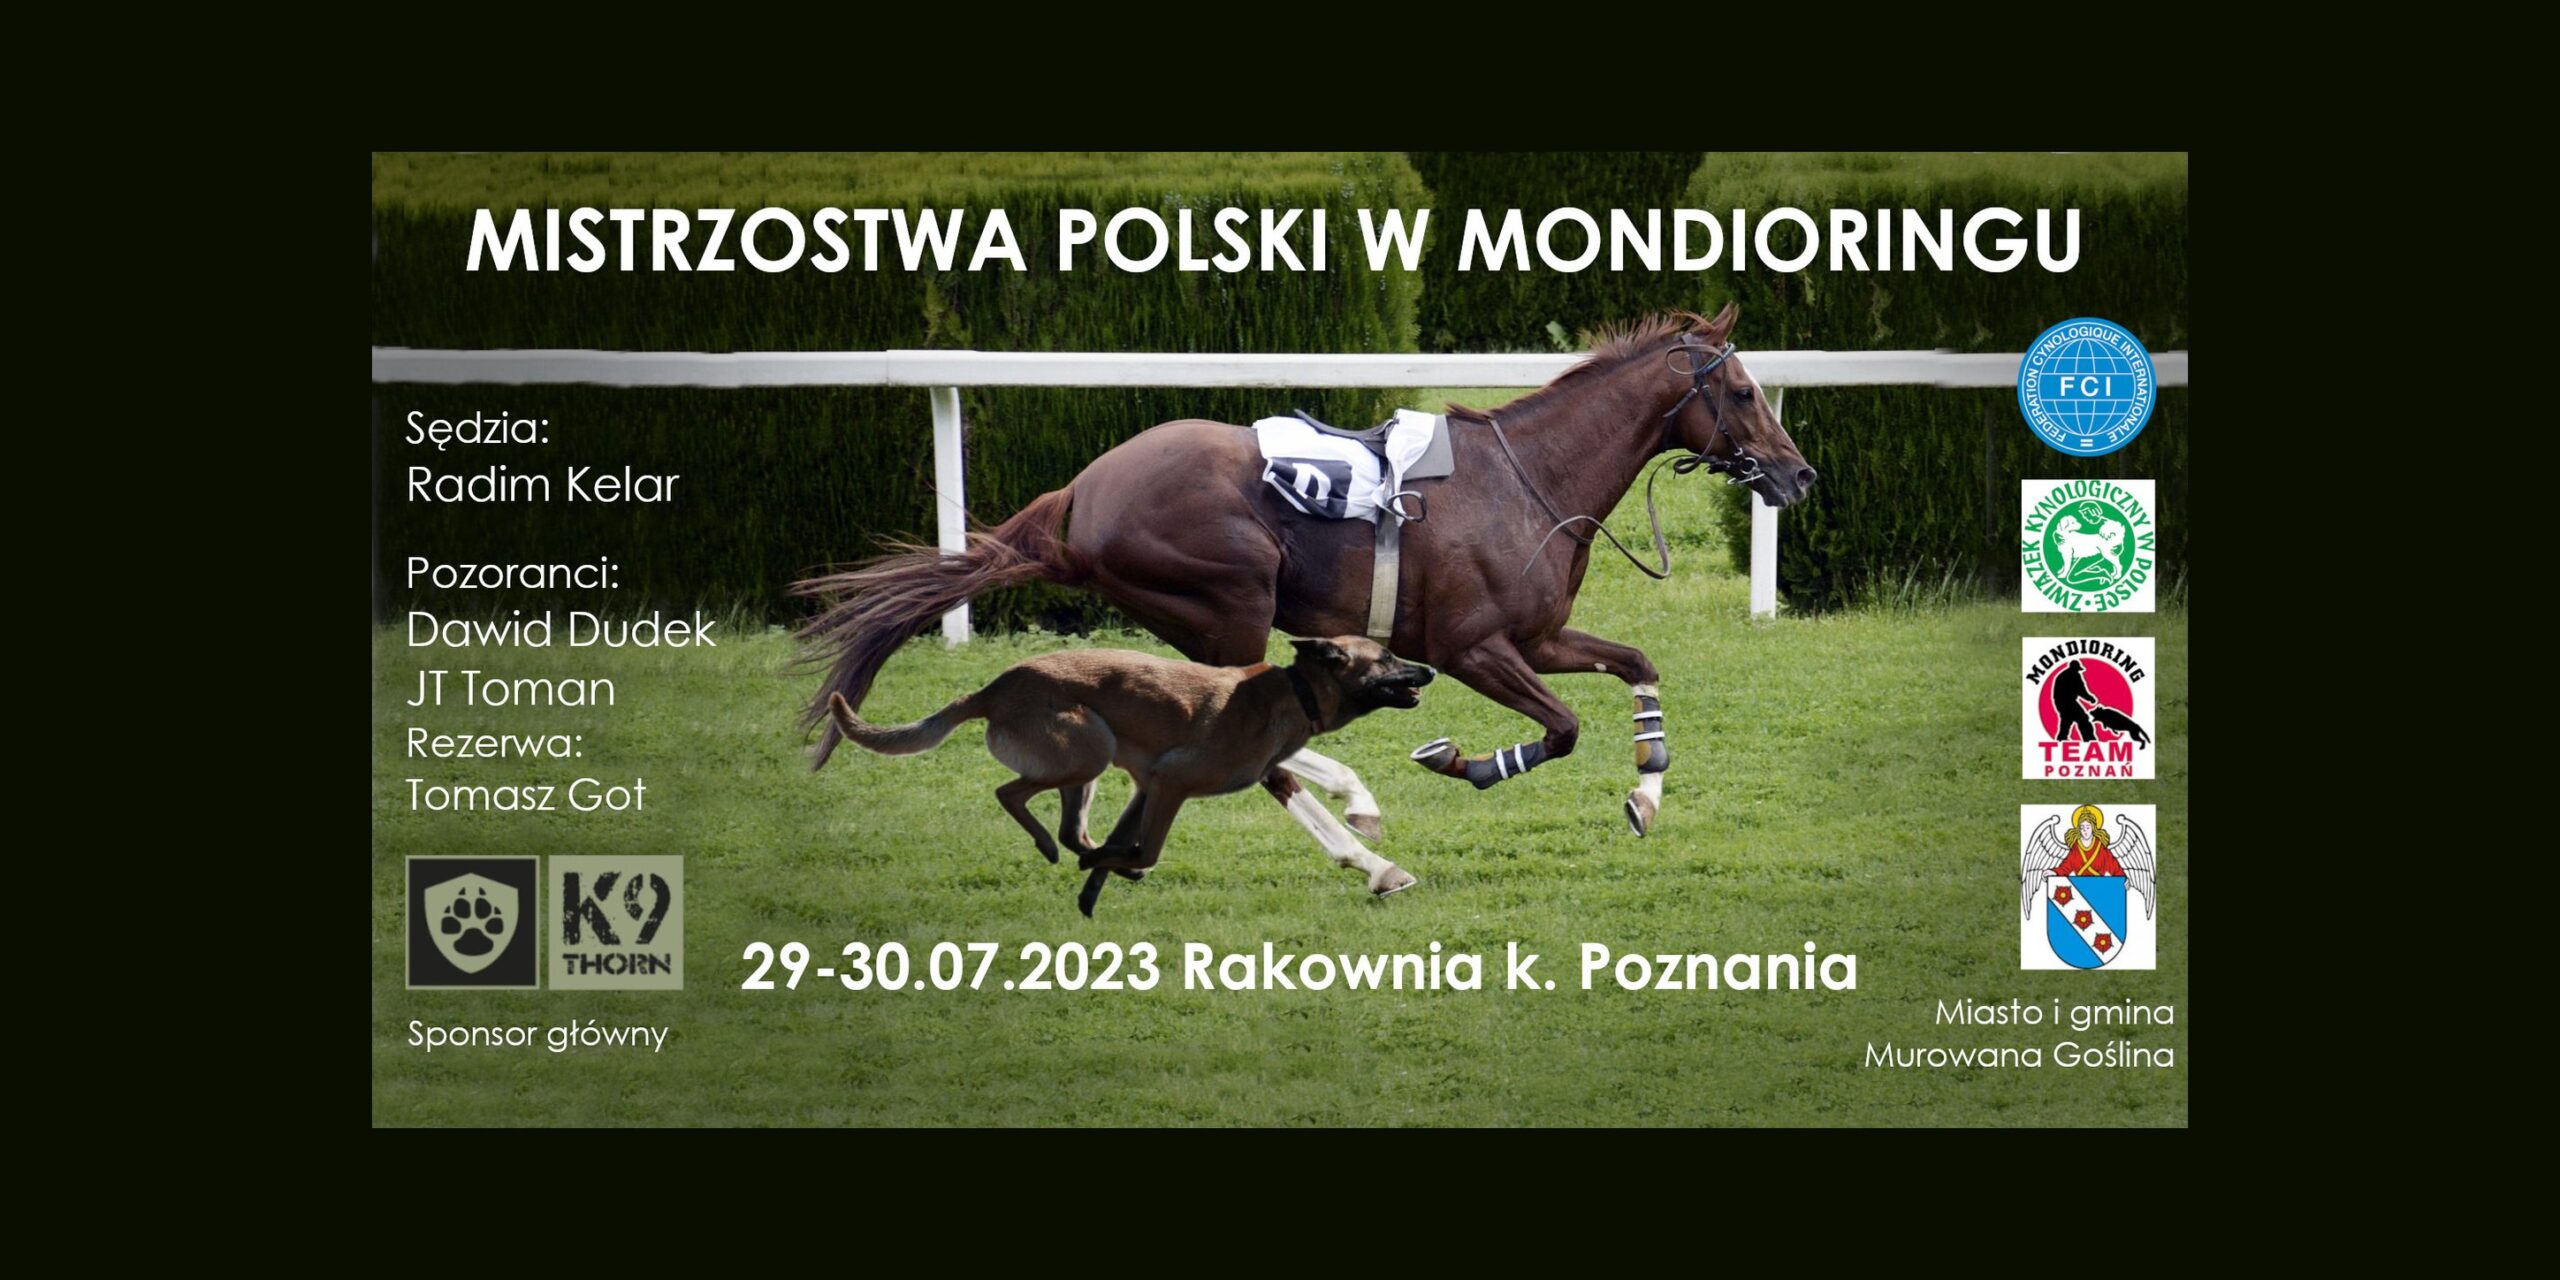 Pozdrawiamy z Mistrzostw Polski w Mondioringu! Jest moc z Dingo Gear !!!